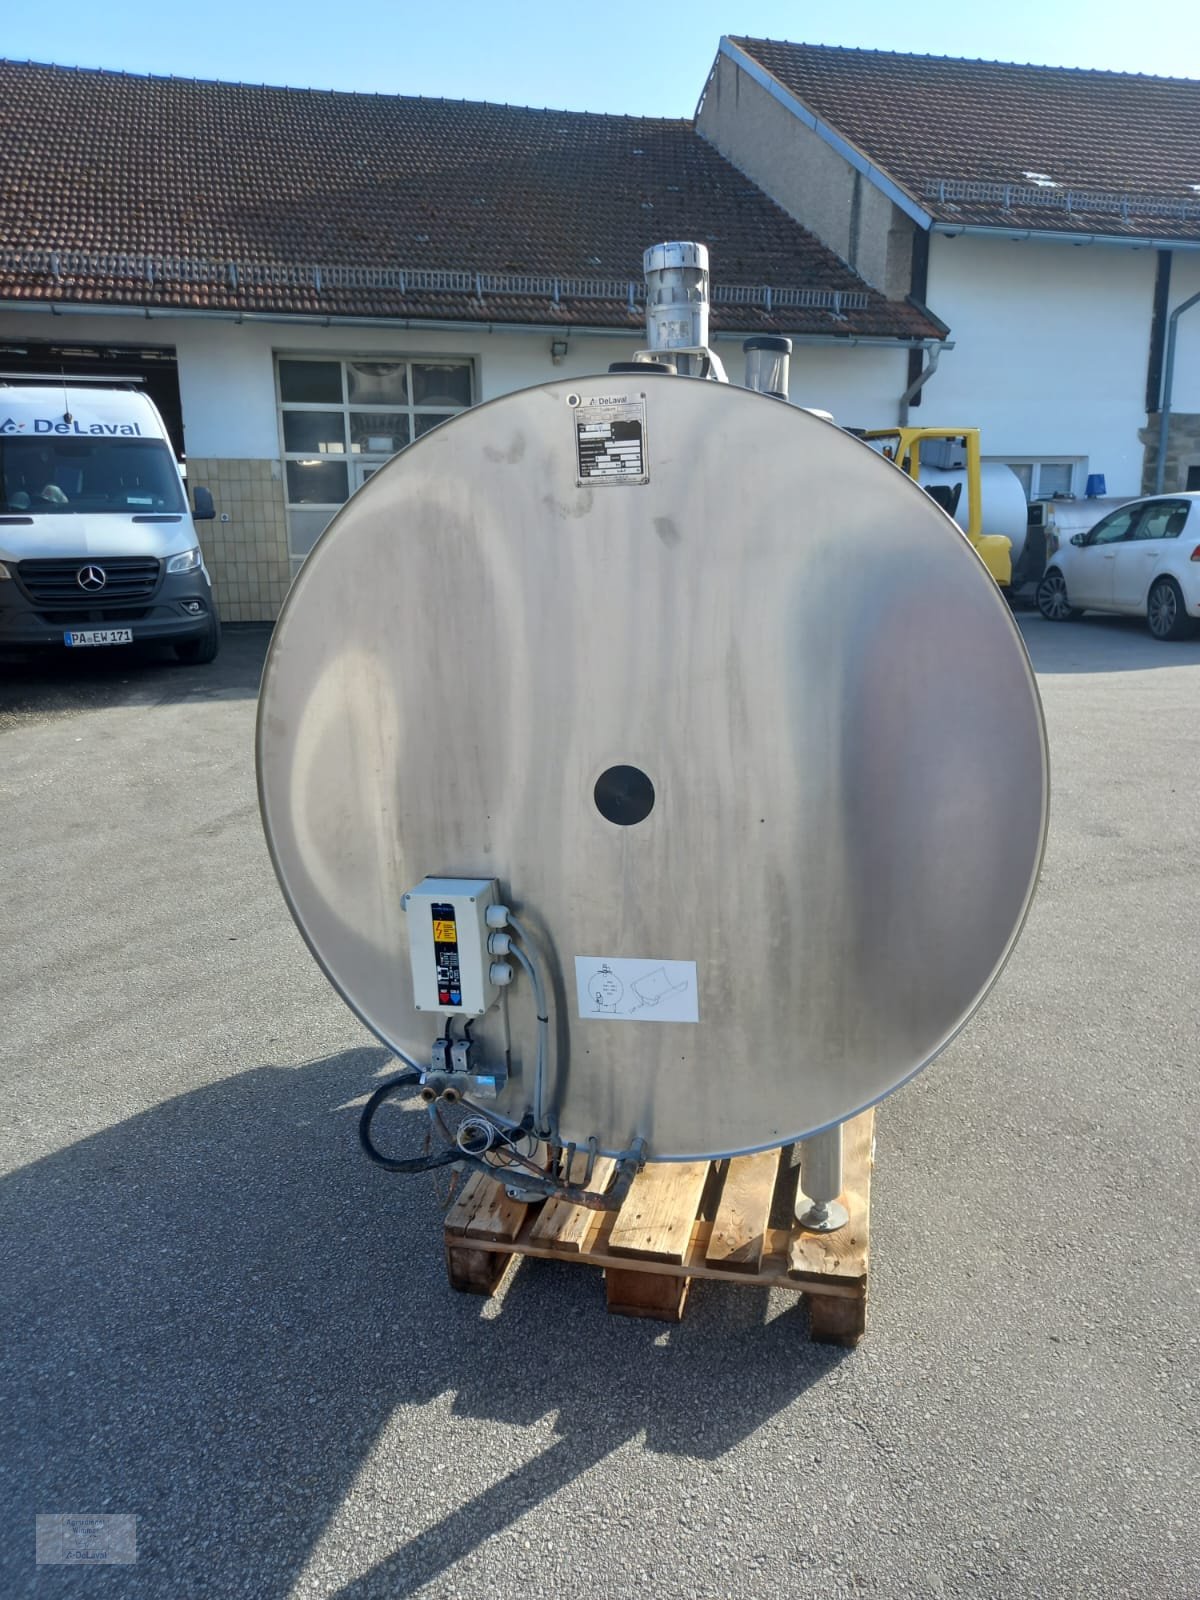 Milchkühltank des Typs DeLaval DXCR, Gebrauchtmaschine in Hutthurm (Bild 1)